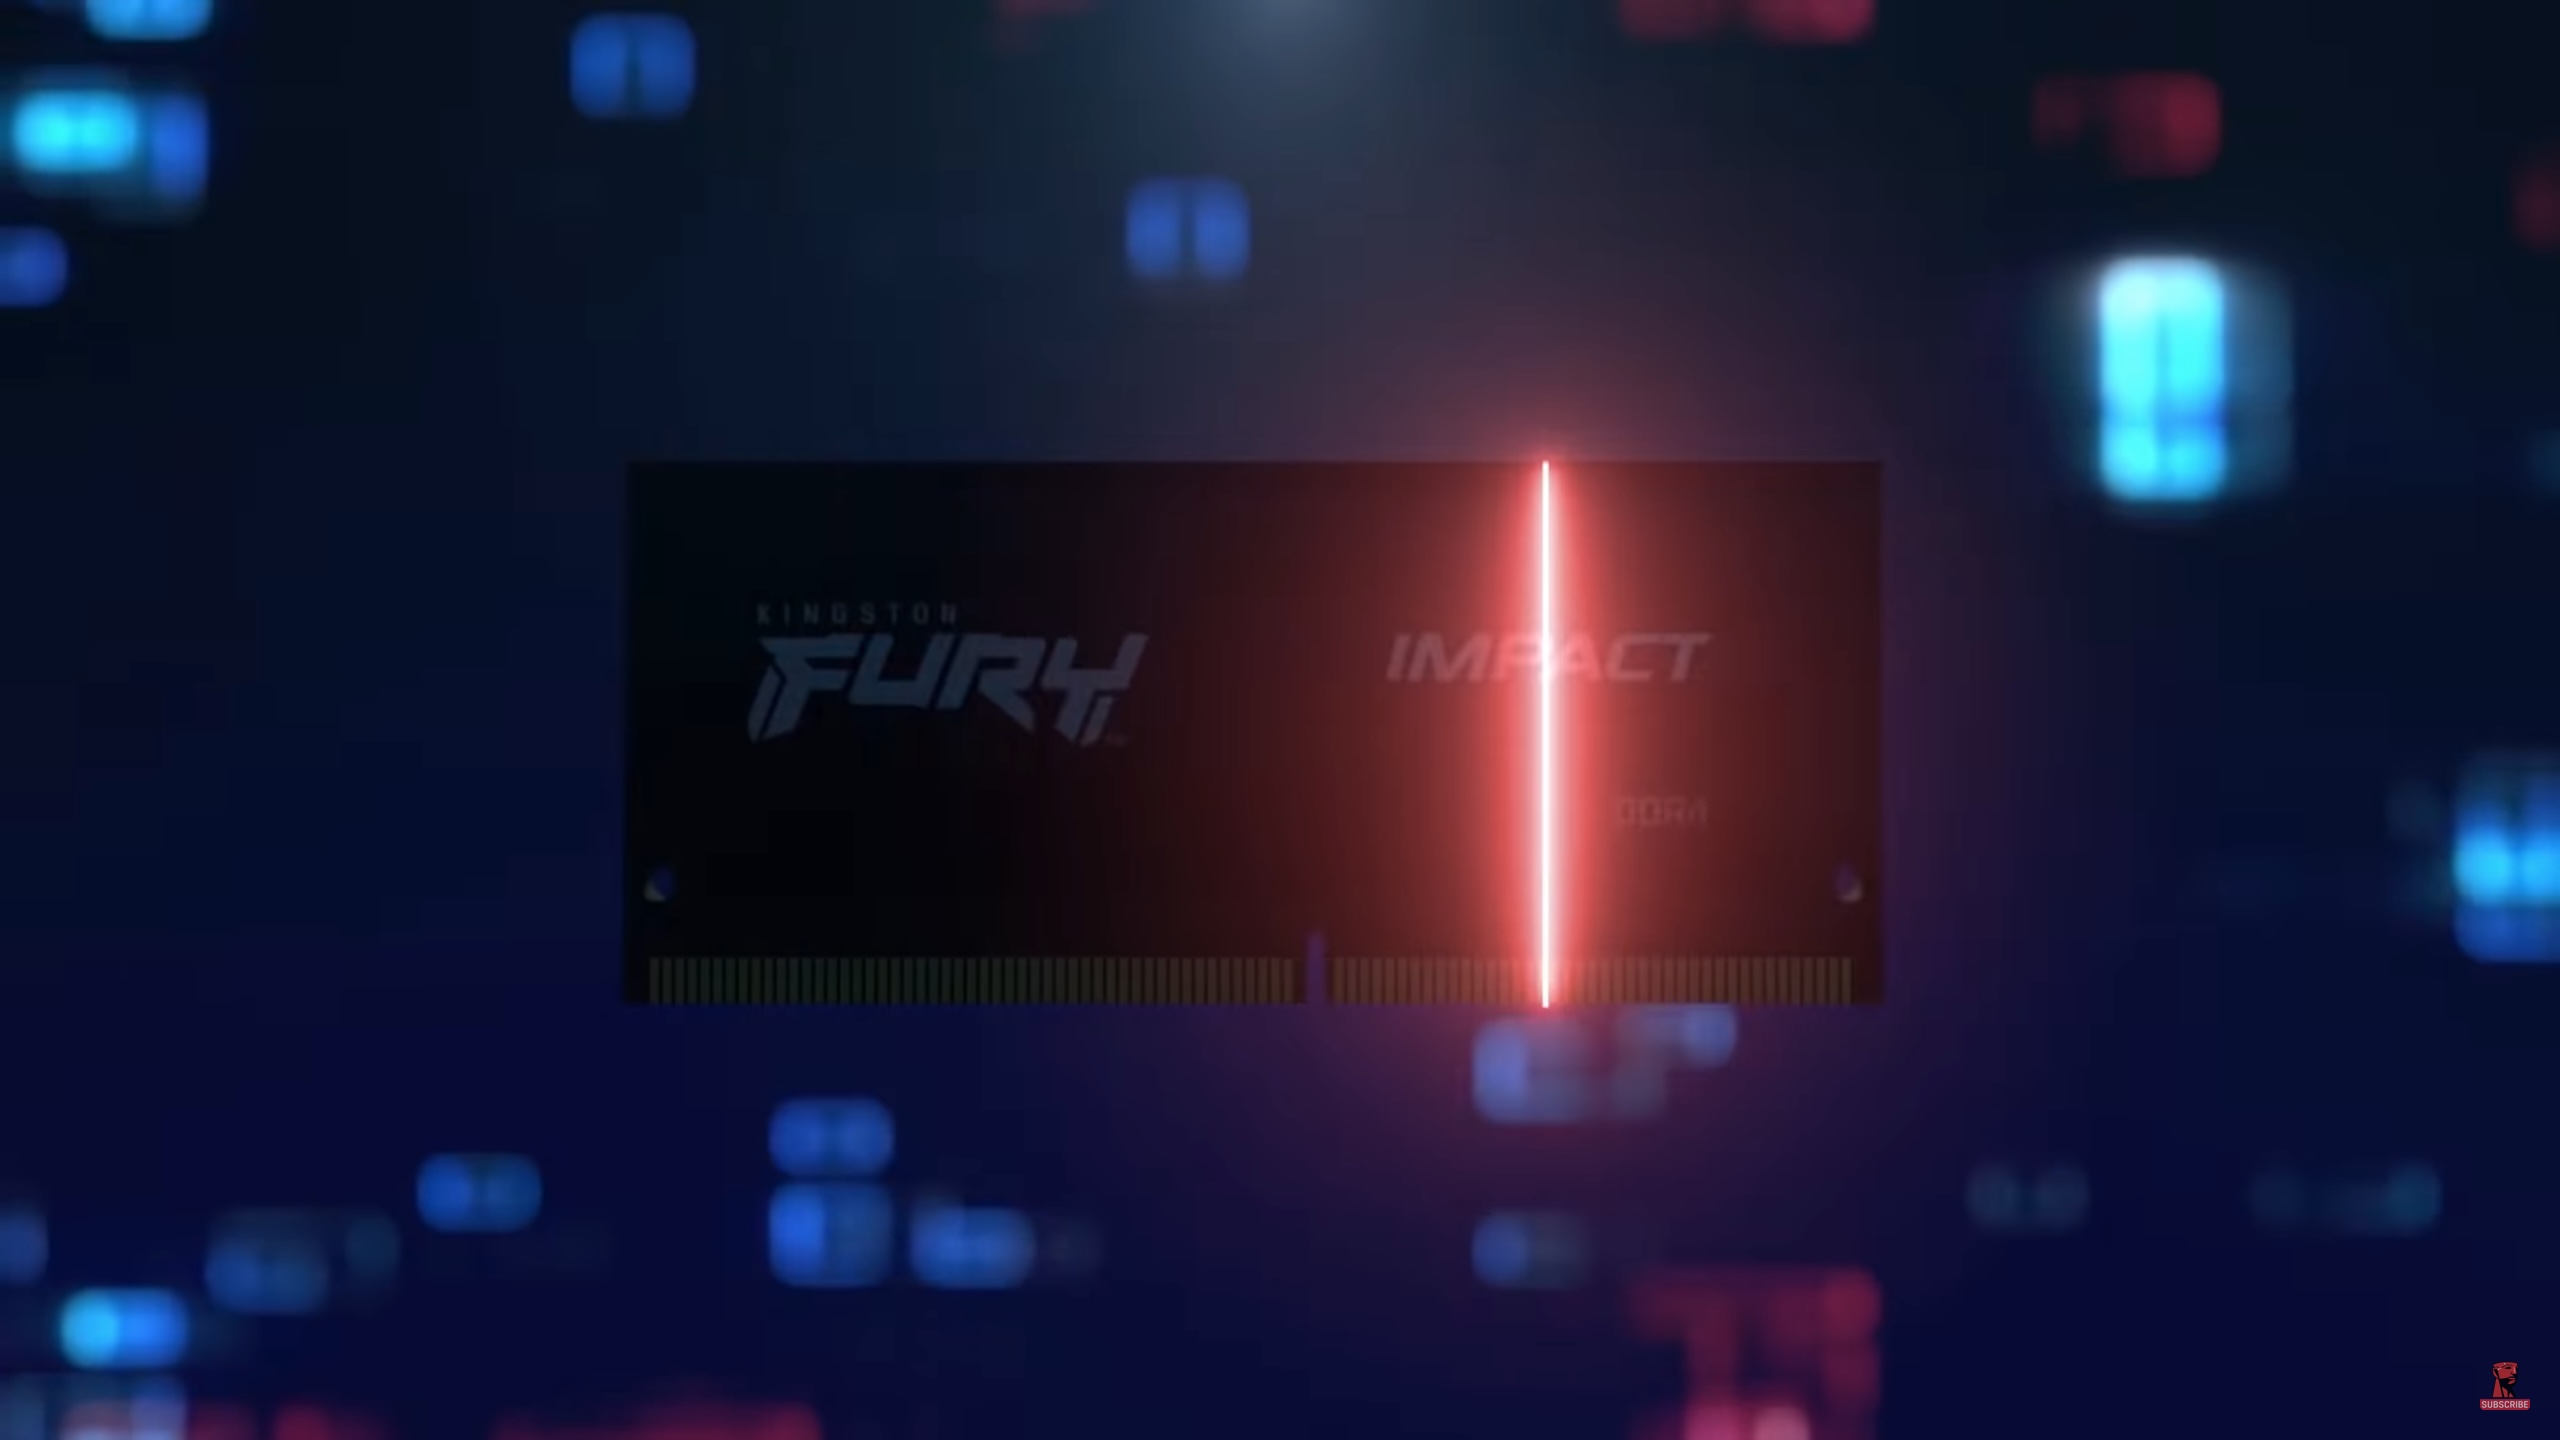 Kingston công bố thương hiệu bộ nhớ hiệu năng cao Kingston FURY dành cho game thủ